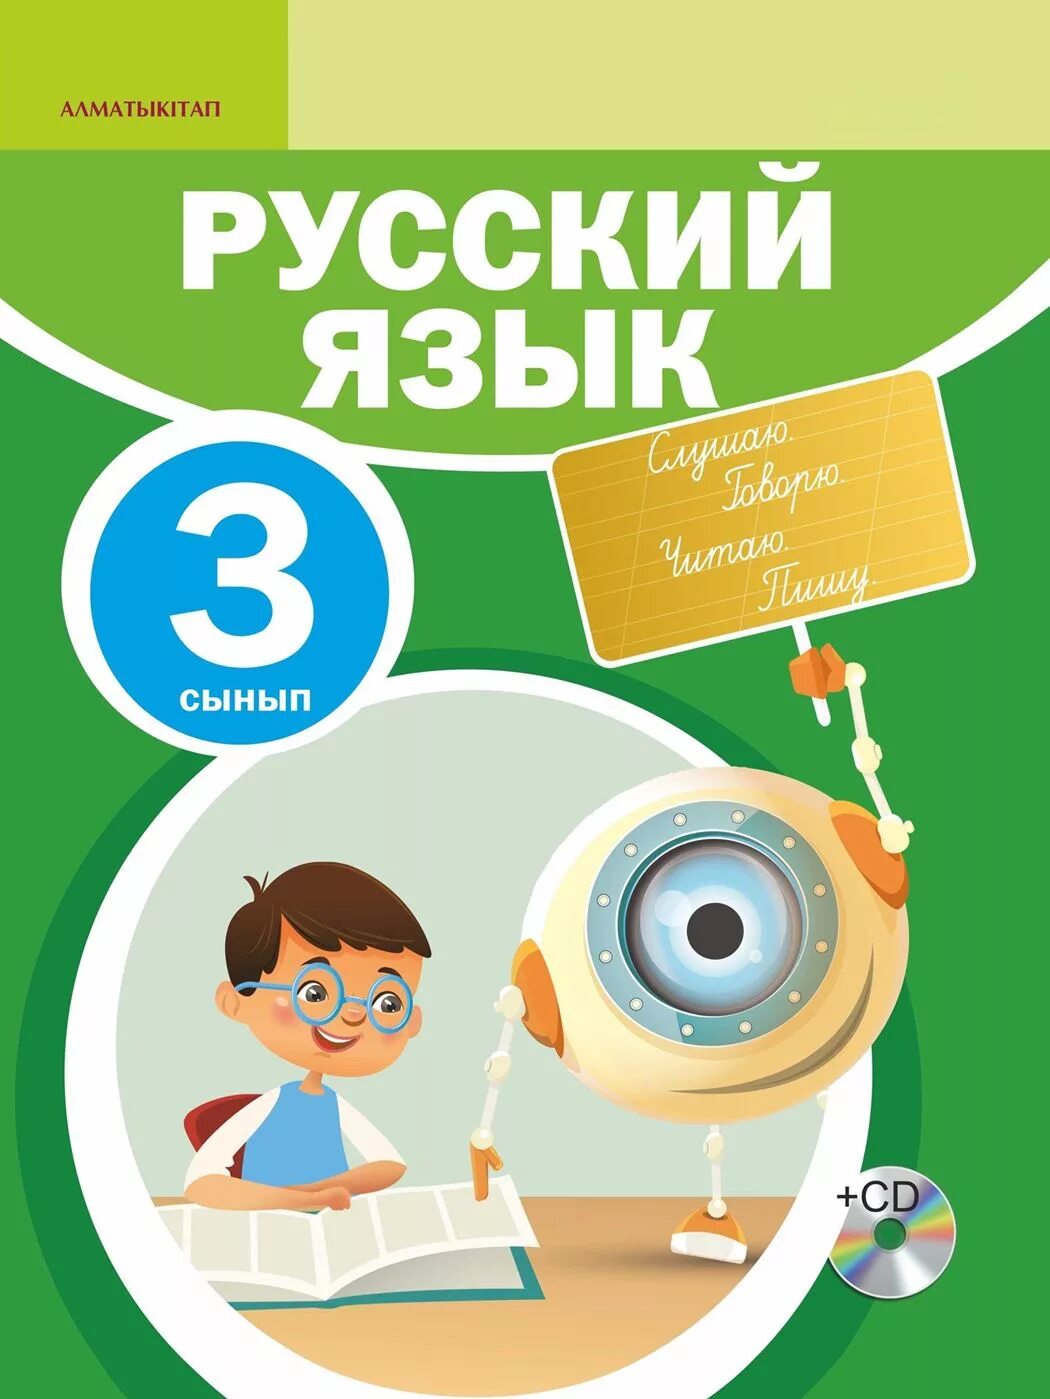 Русский язык 3 класс казахская школа